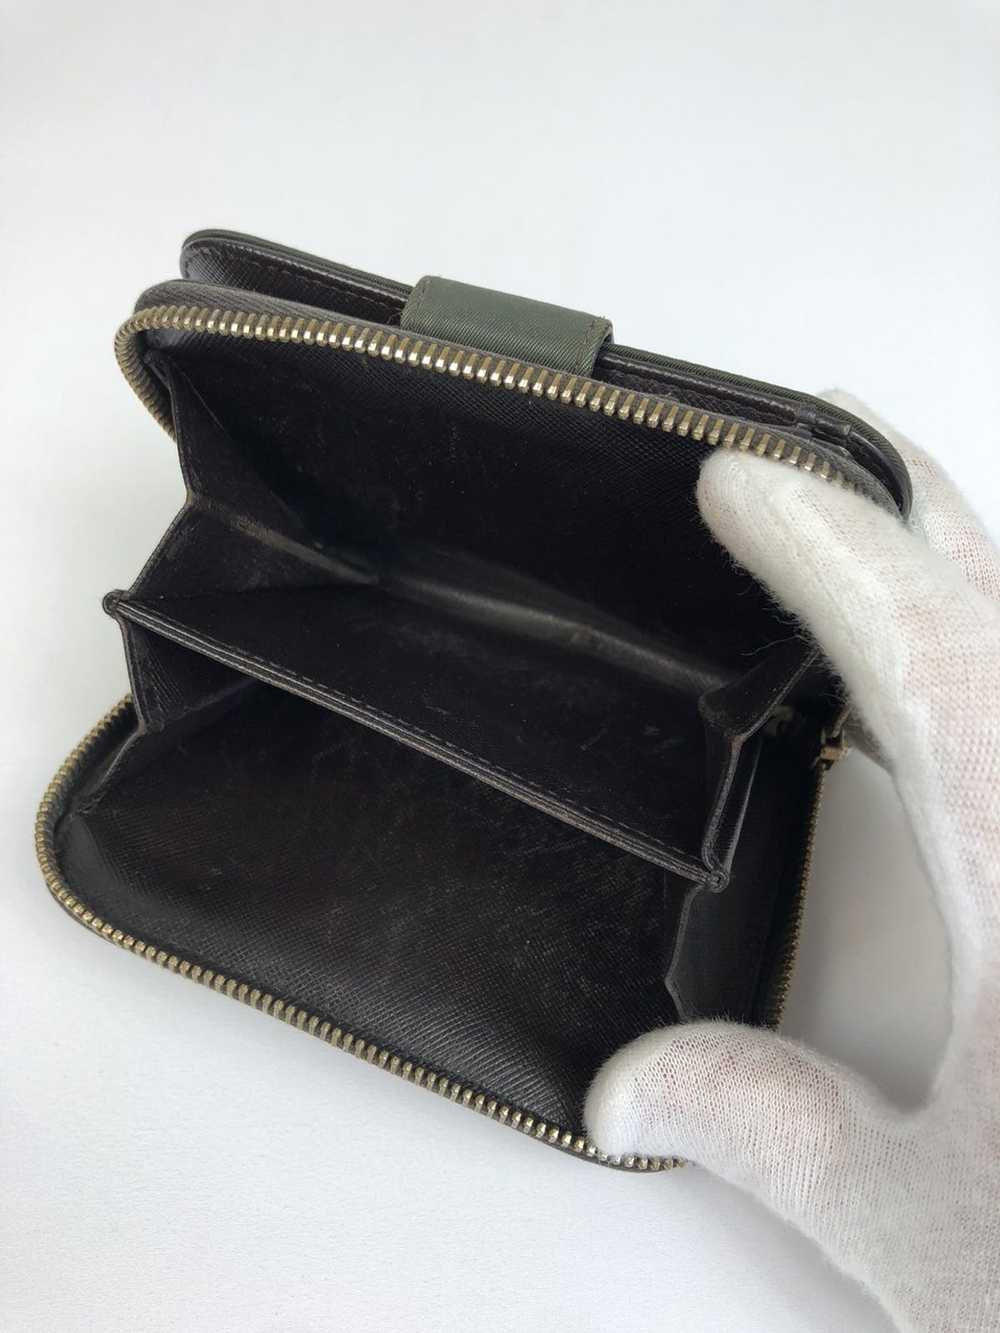 Prada Prada tessuto nylon zippy wallet - image 6